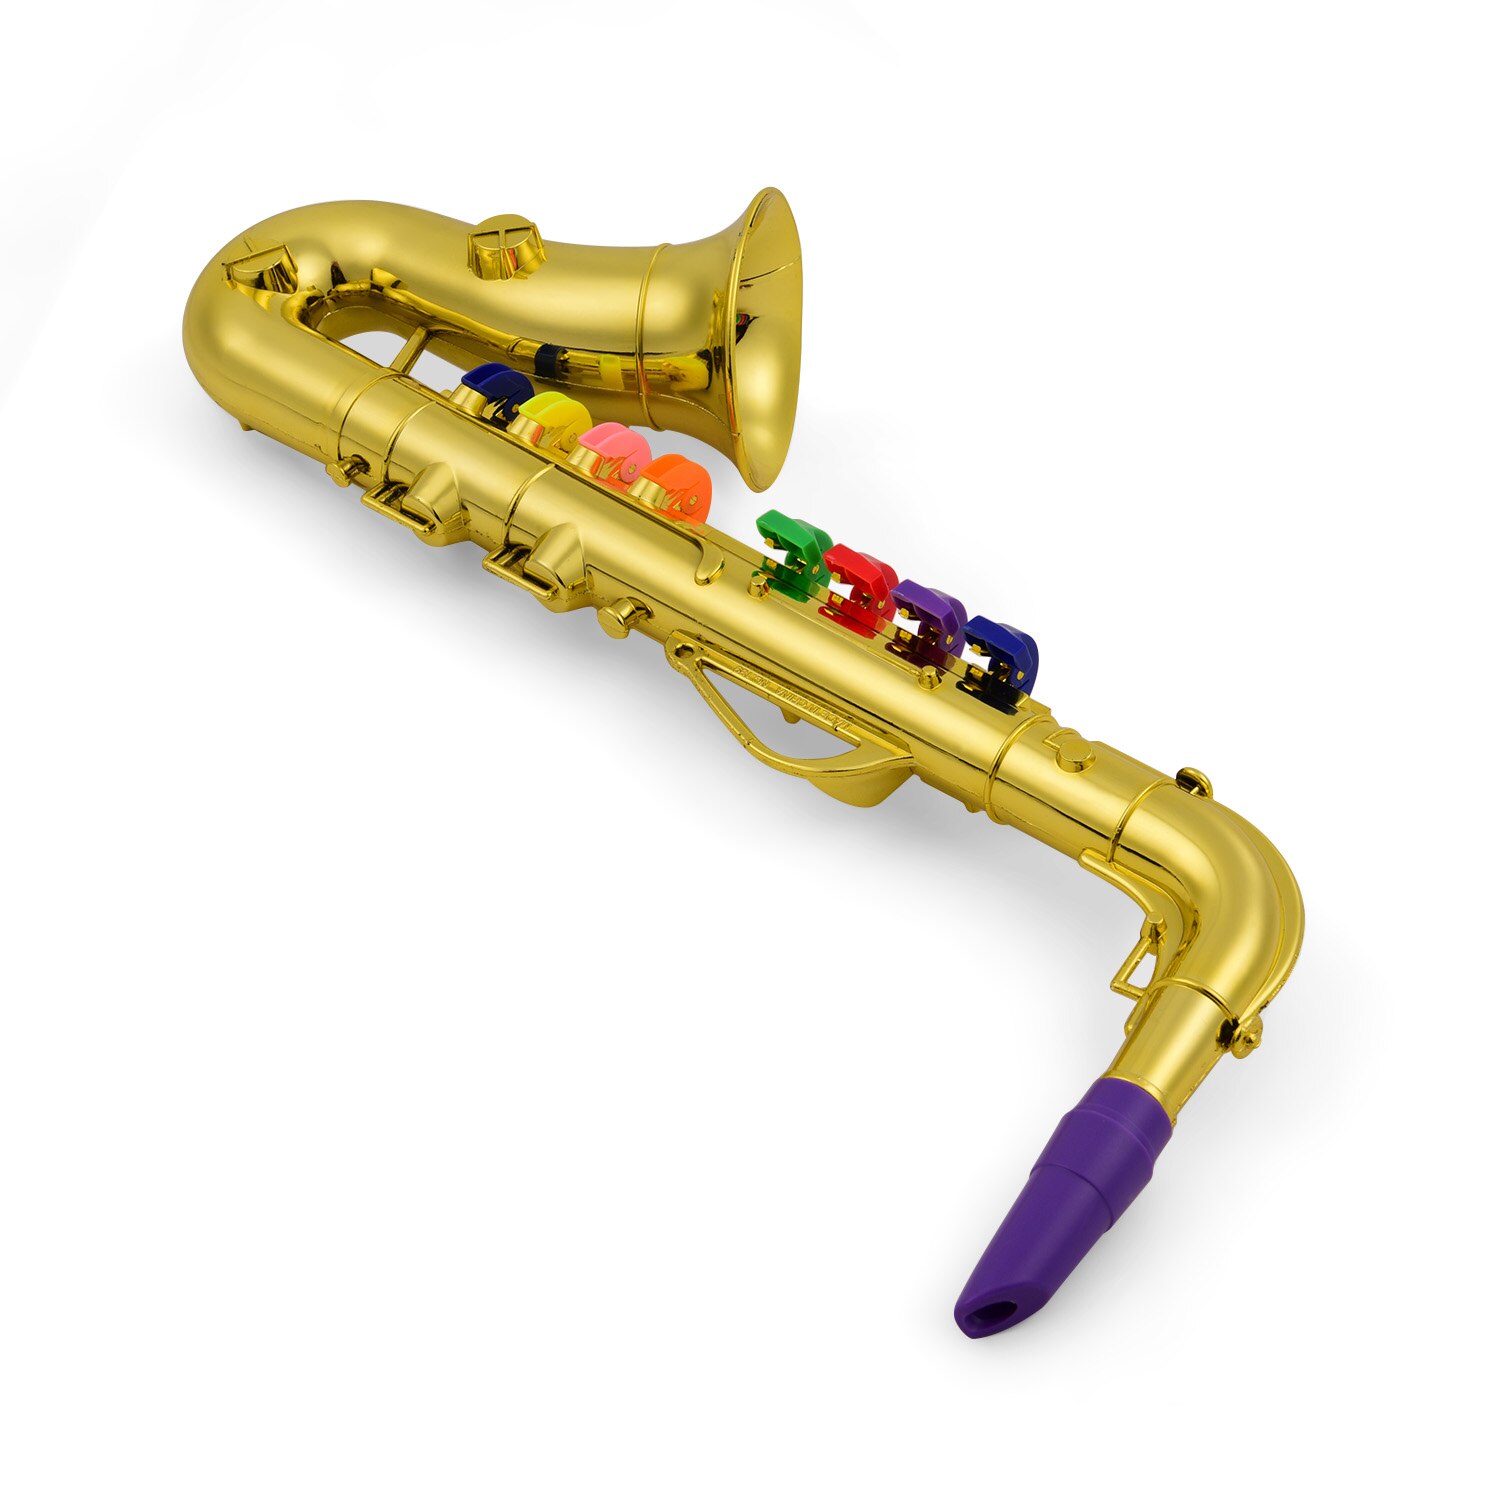 Saxofon børn abs metallisk guld saxofon med 8 farvede nøgler sax